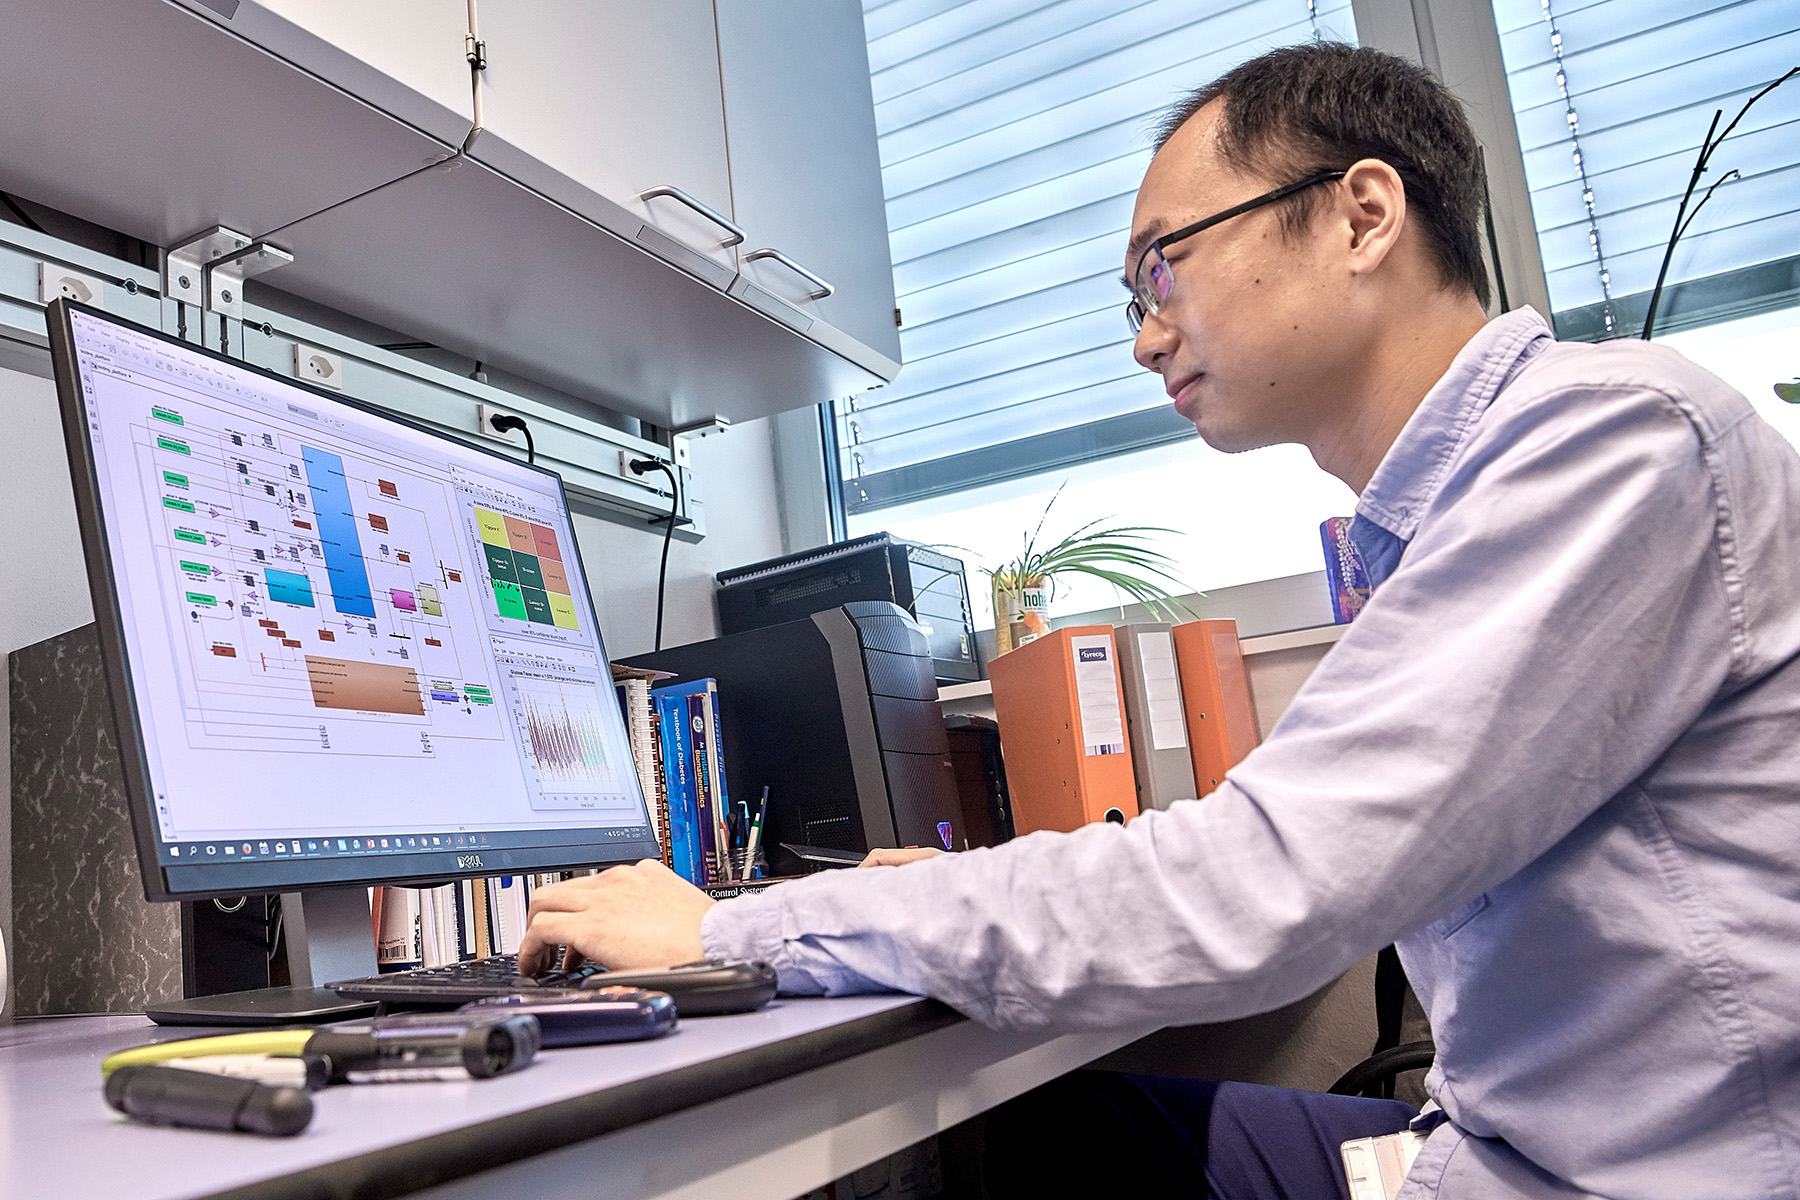 Qingnan Sun, Doktorand am ARTORG Center, mit dem lernfähigen Modell, das auf Grund der Gewohnheiten von Betroffenen fähig ist, personalisierte Empfehlungen zum Insulin-Einsatz zu geben. Bild: Adrian Moser